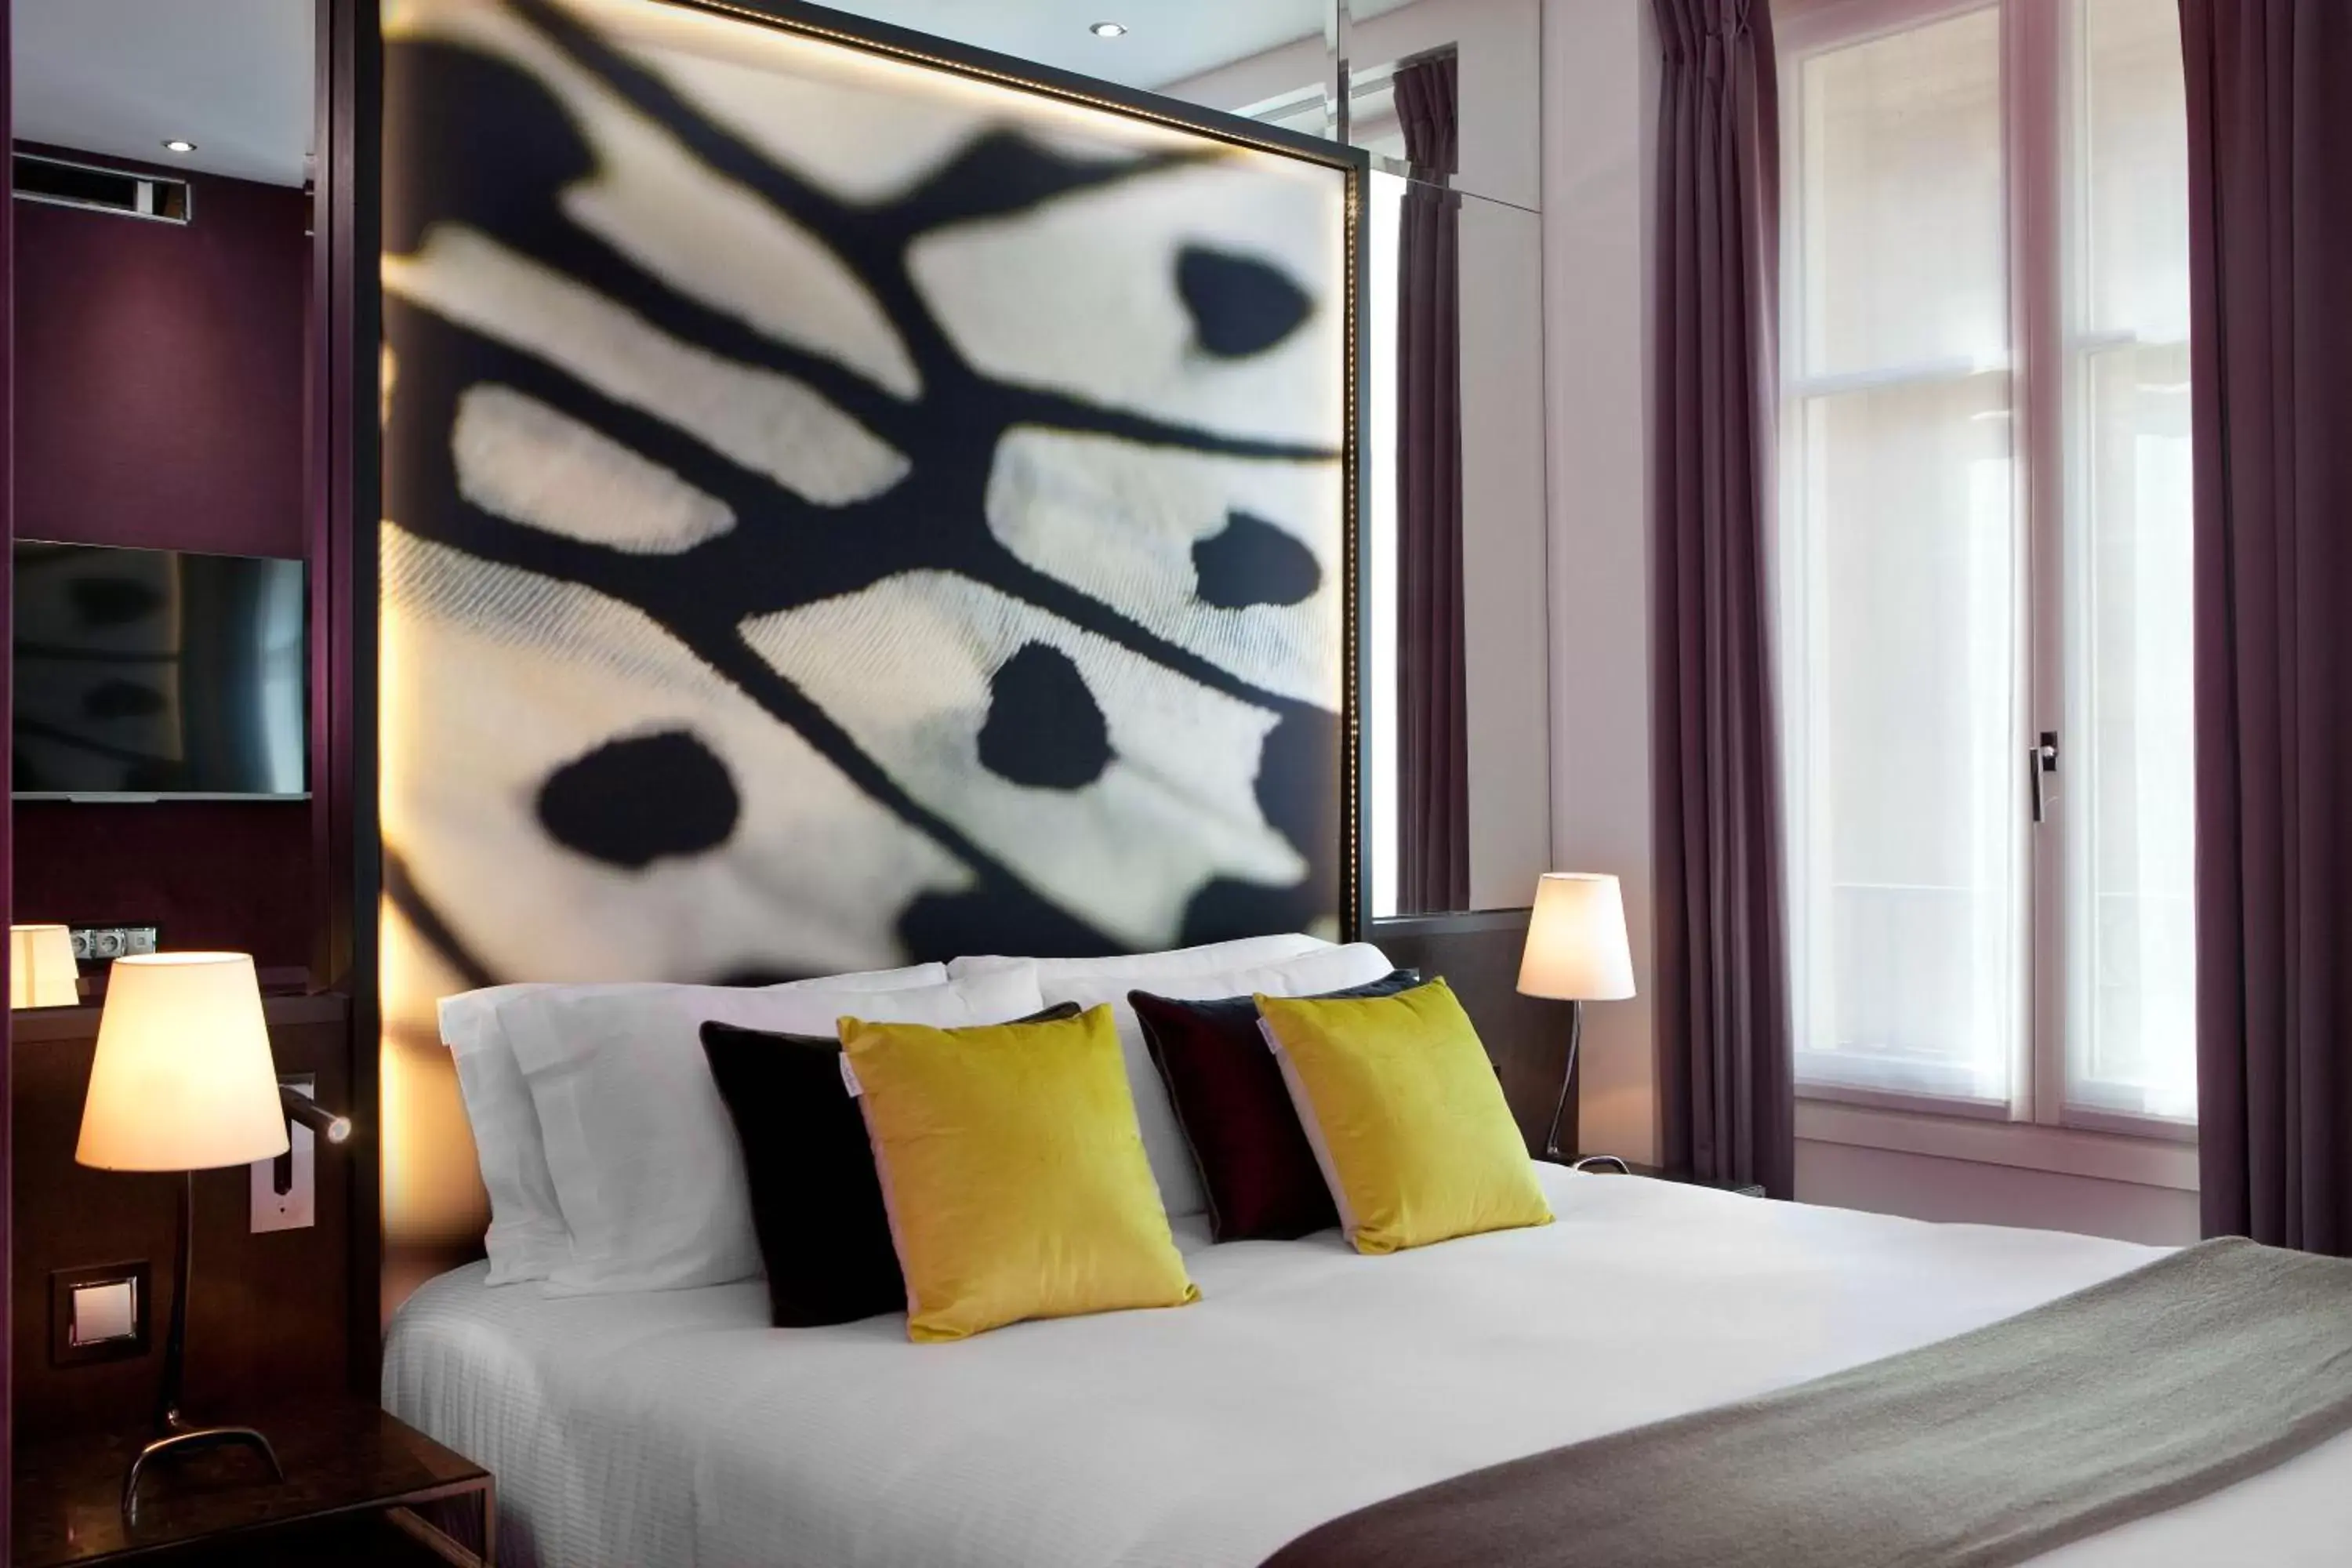 Bed, Room Photo in Hotel de Seze